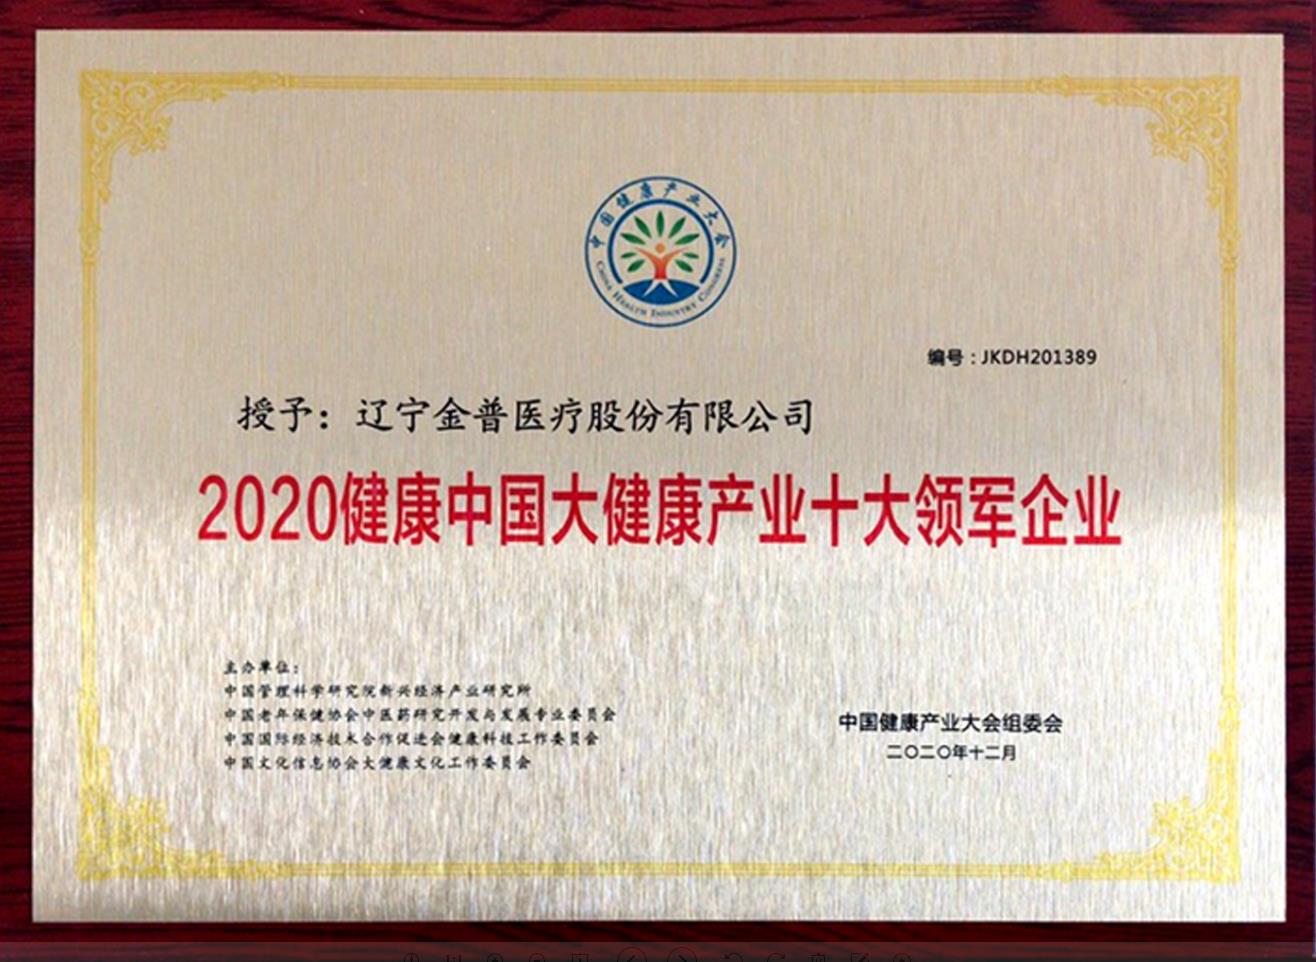 热烈祝贺金普医疗获得“2020健康中国大健康产业十大领军企业”荣誉称号